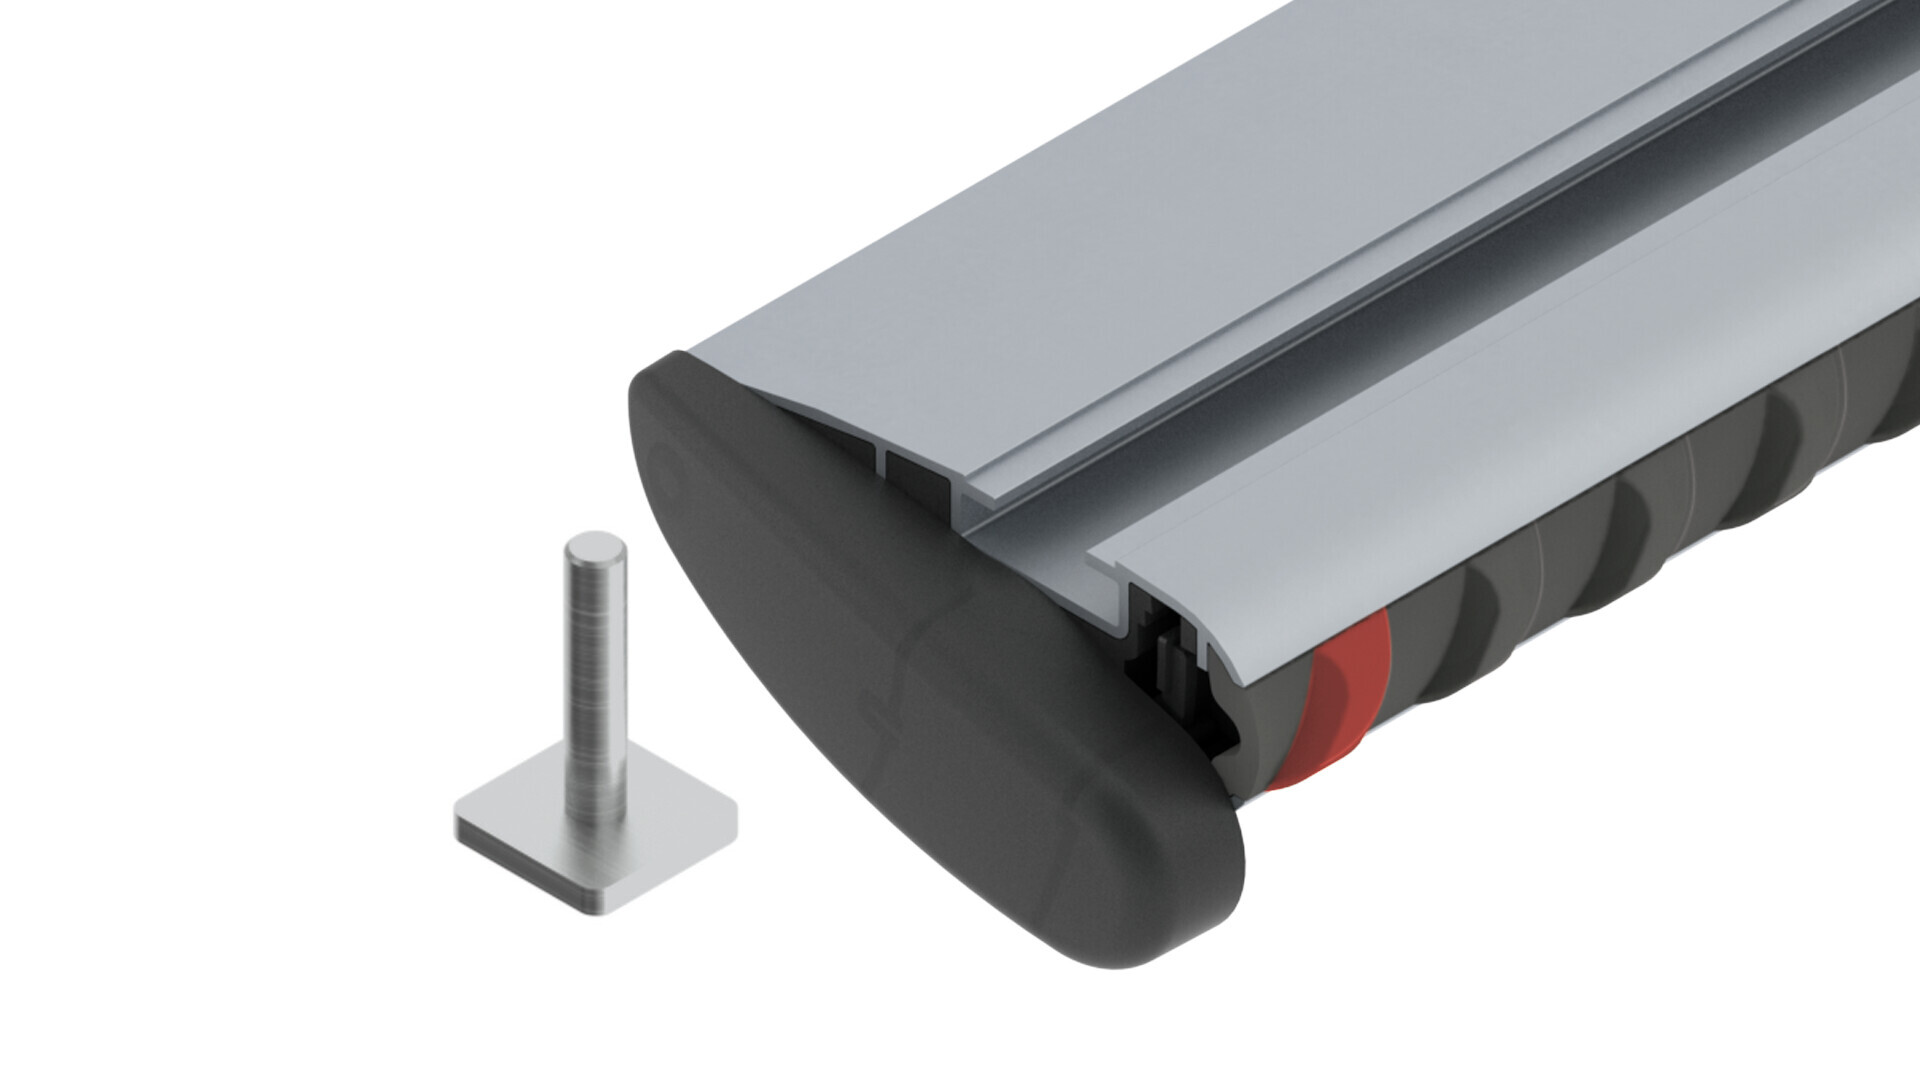 Silenzio, pair of aluminium roof bars - XL - 140 cm thumb